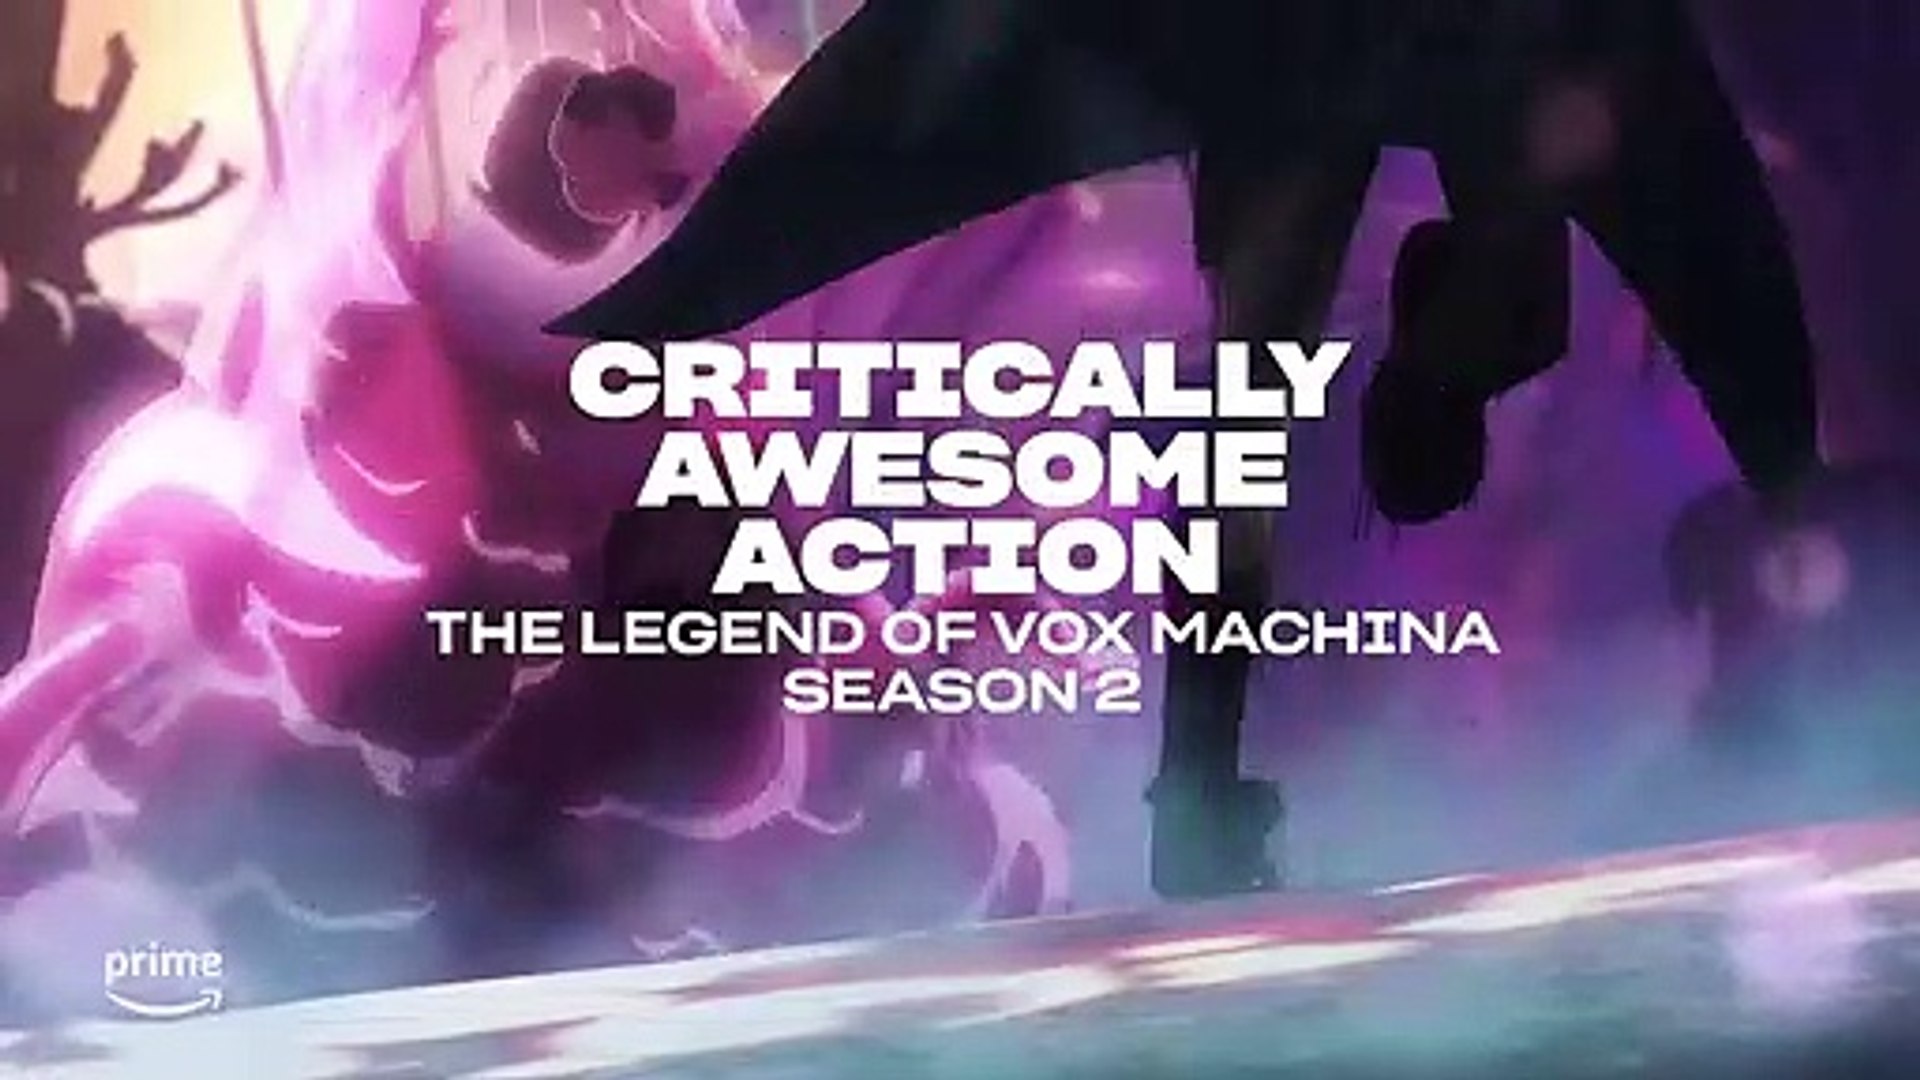 The Legend of Vox Machina  2ª temporada ganha trailer e data de